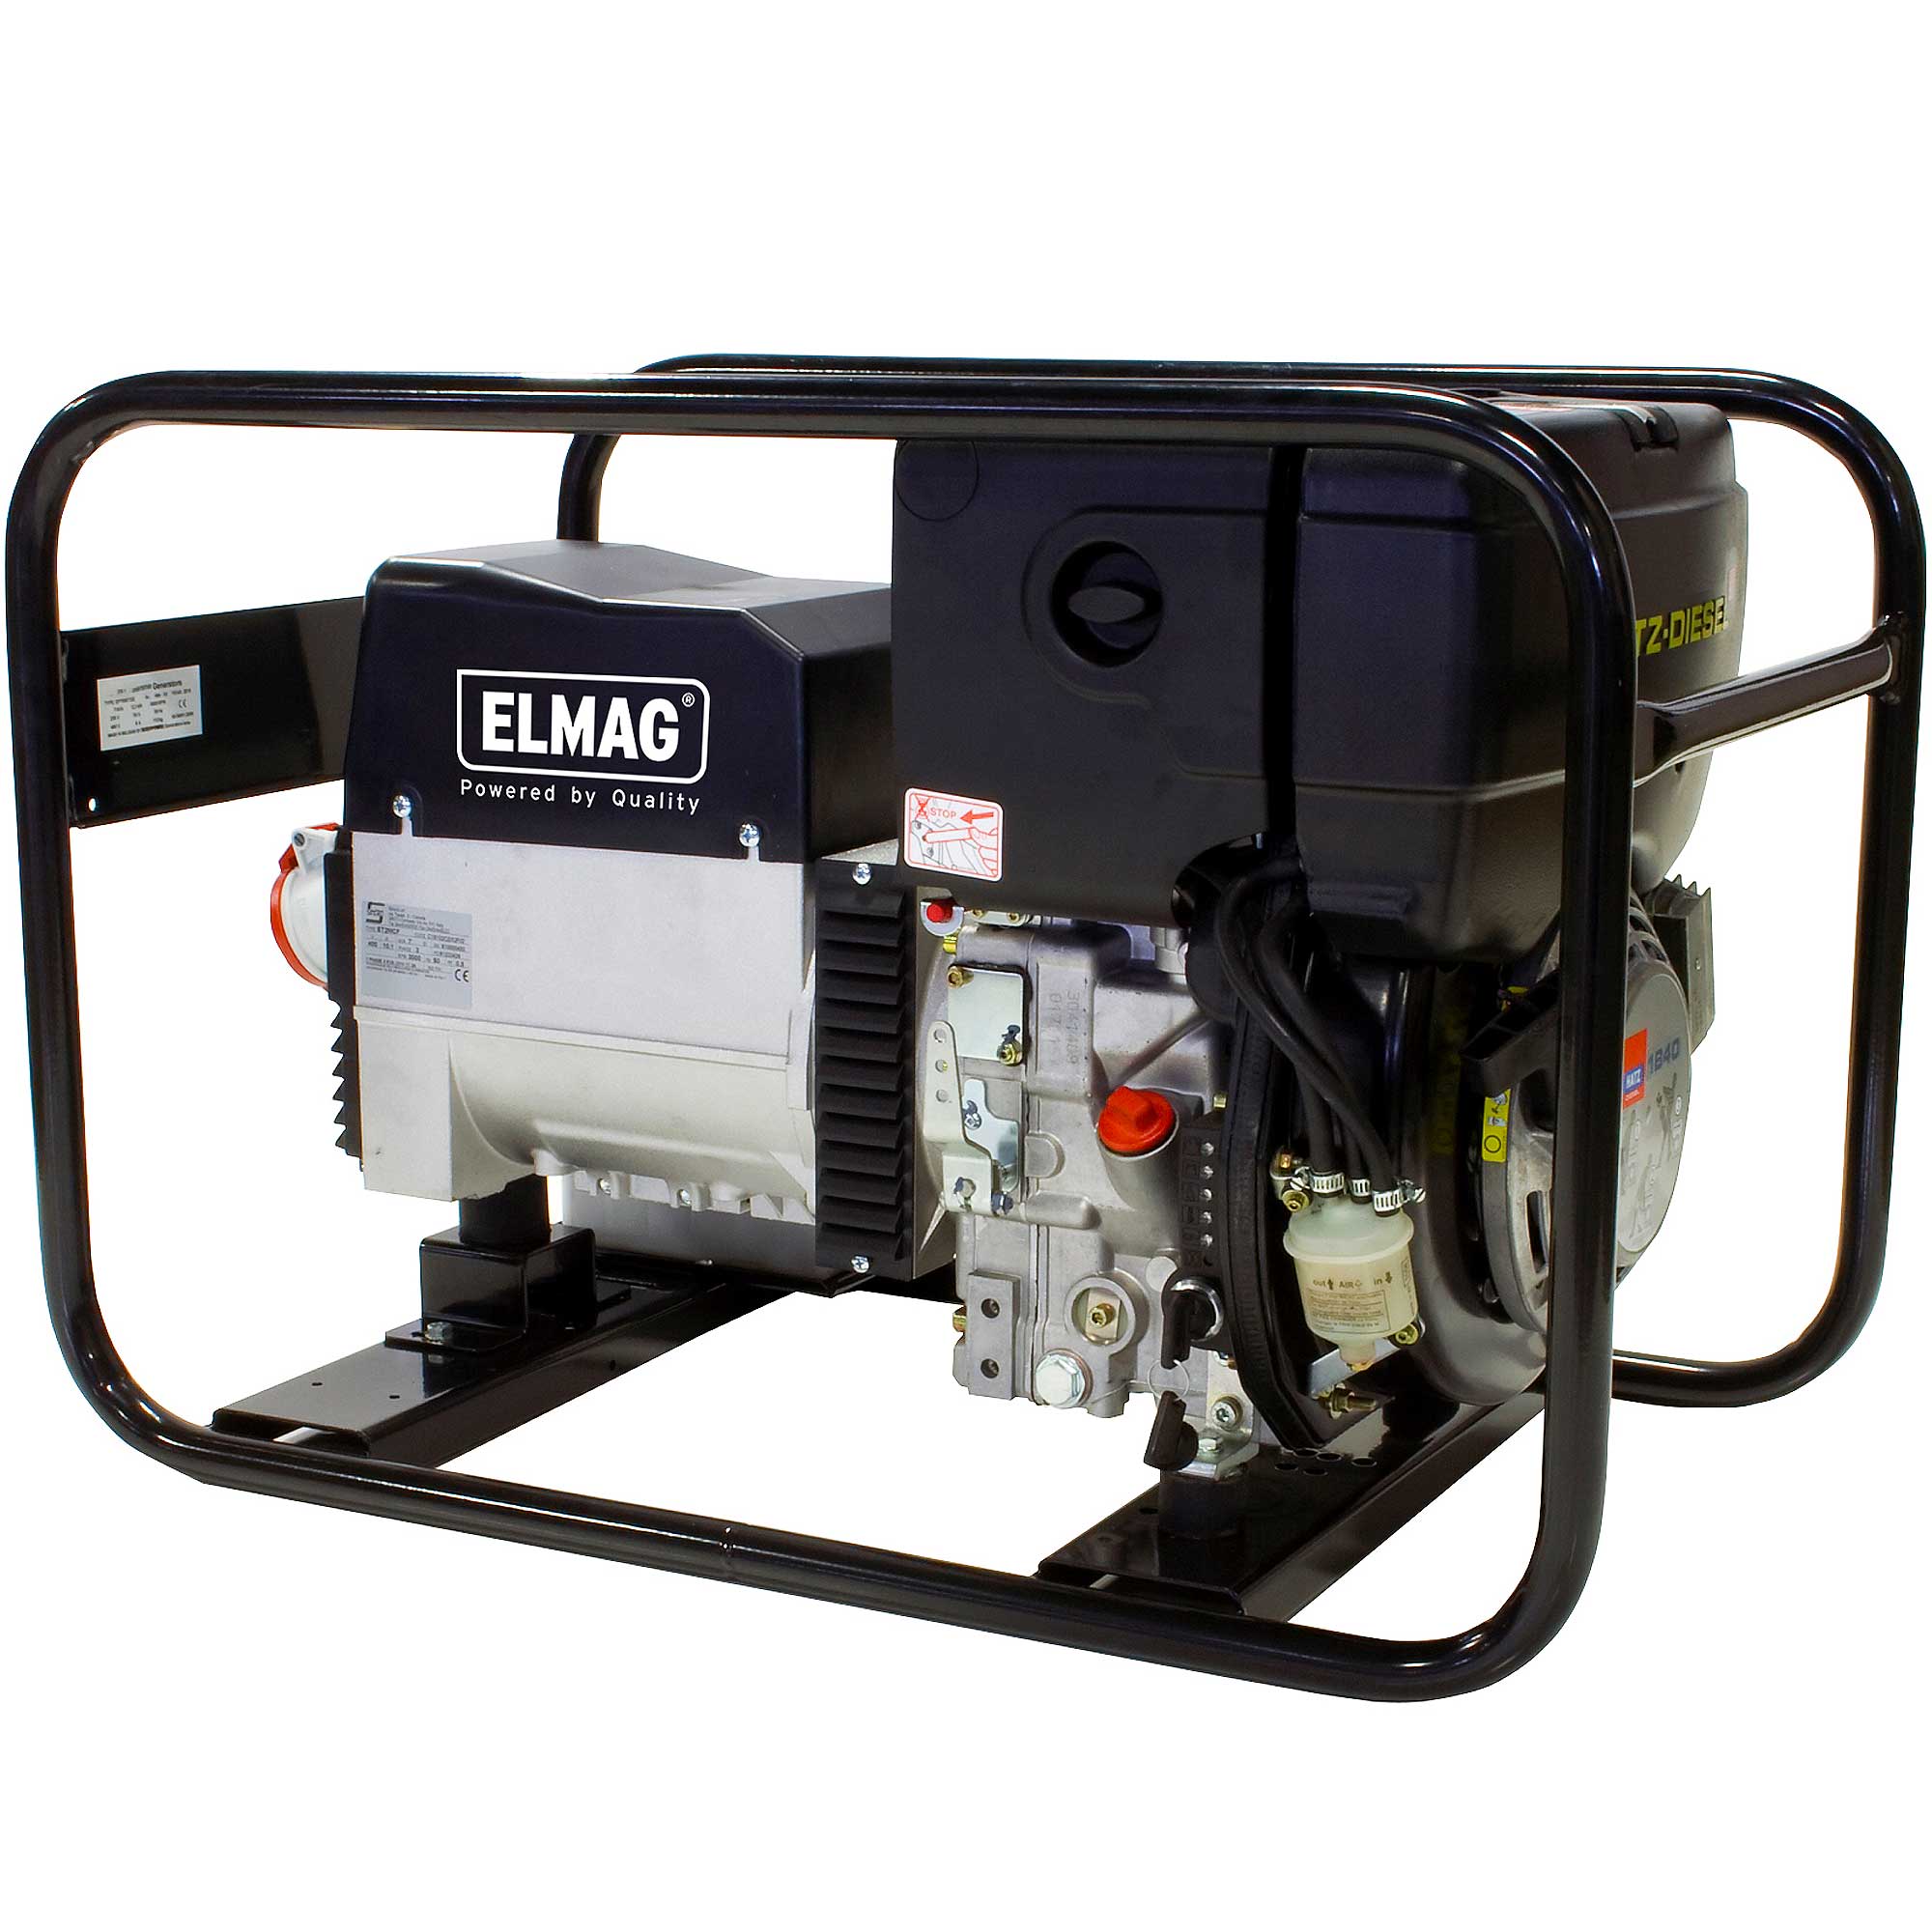 Elmag Power Generator SED 7000WDE-AVR